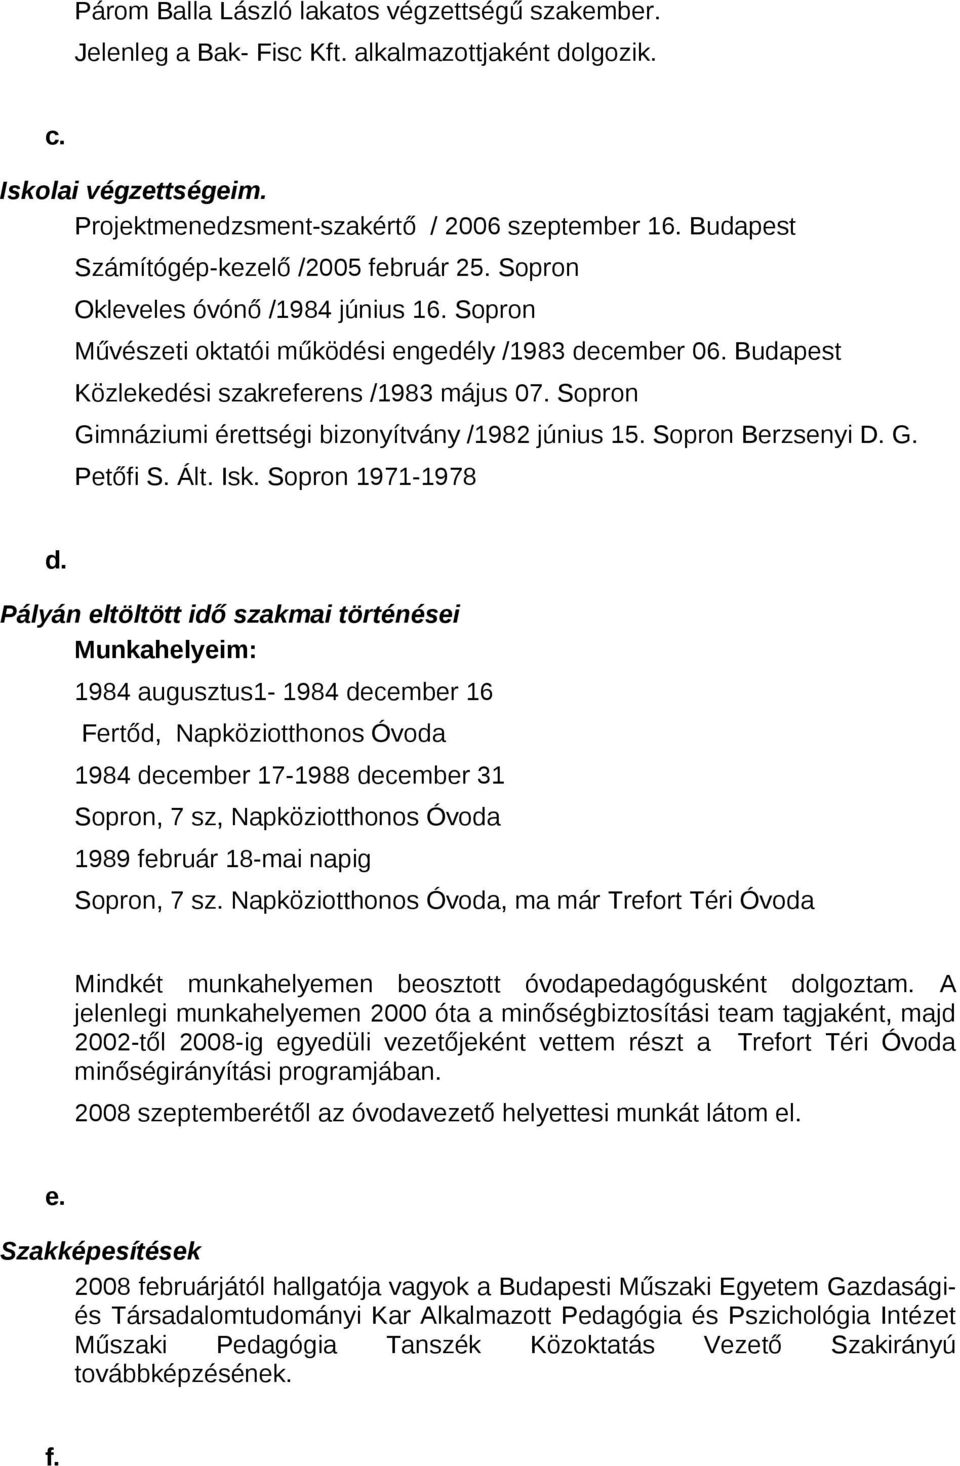 Sopron Gimnáziumi érettségi bizonyítvány /1982 június 15. Sopron Berzsenyi D. G. Petőfi S. Ált. Isk. Sopron 1971-1978 d.